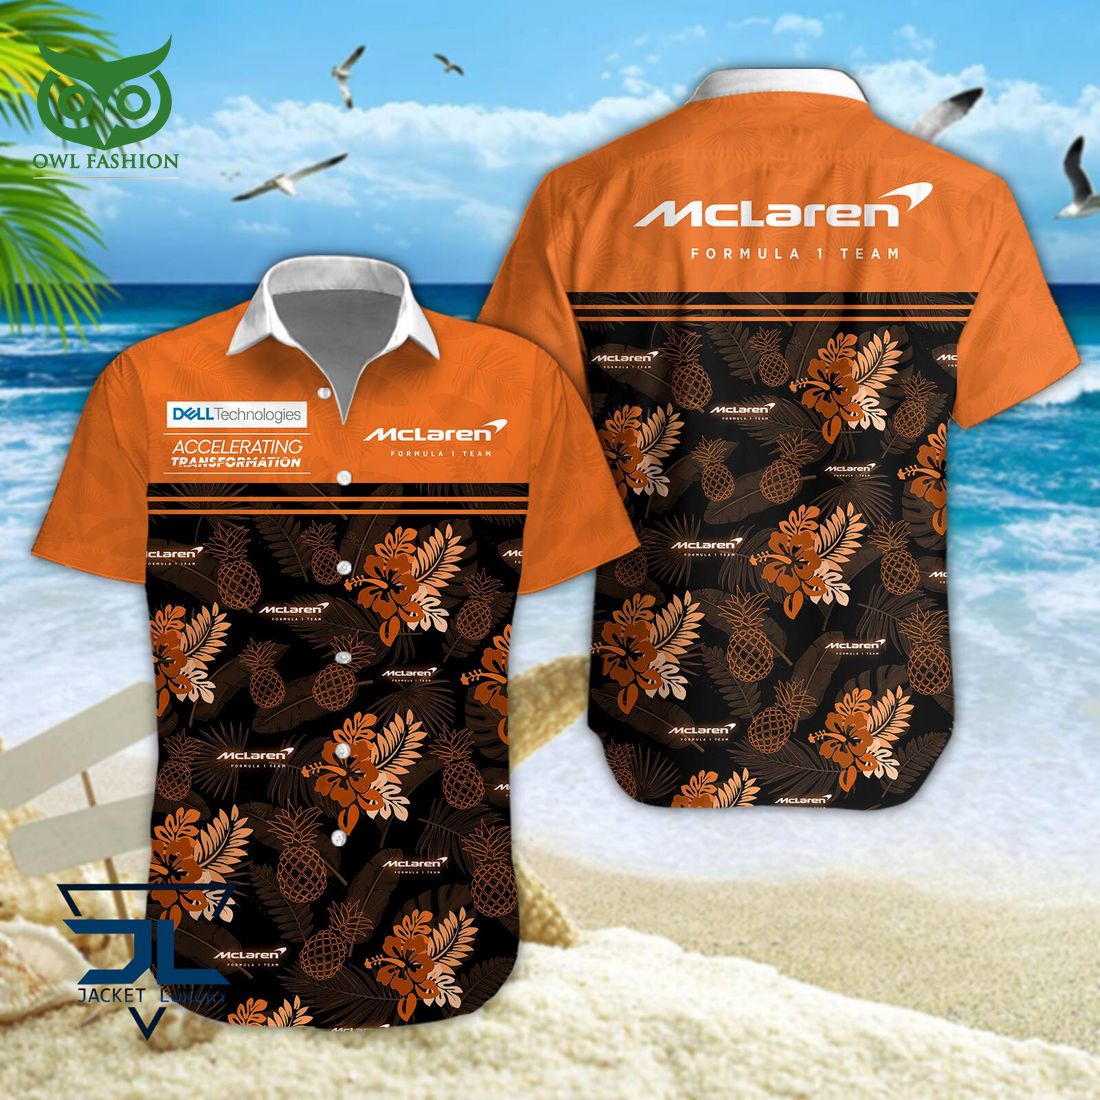 McLaren F1 Team F1 New Hawaiian Shirt Out of the world